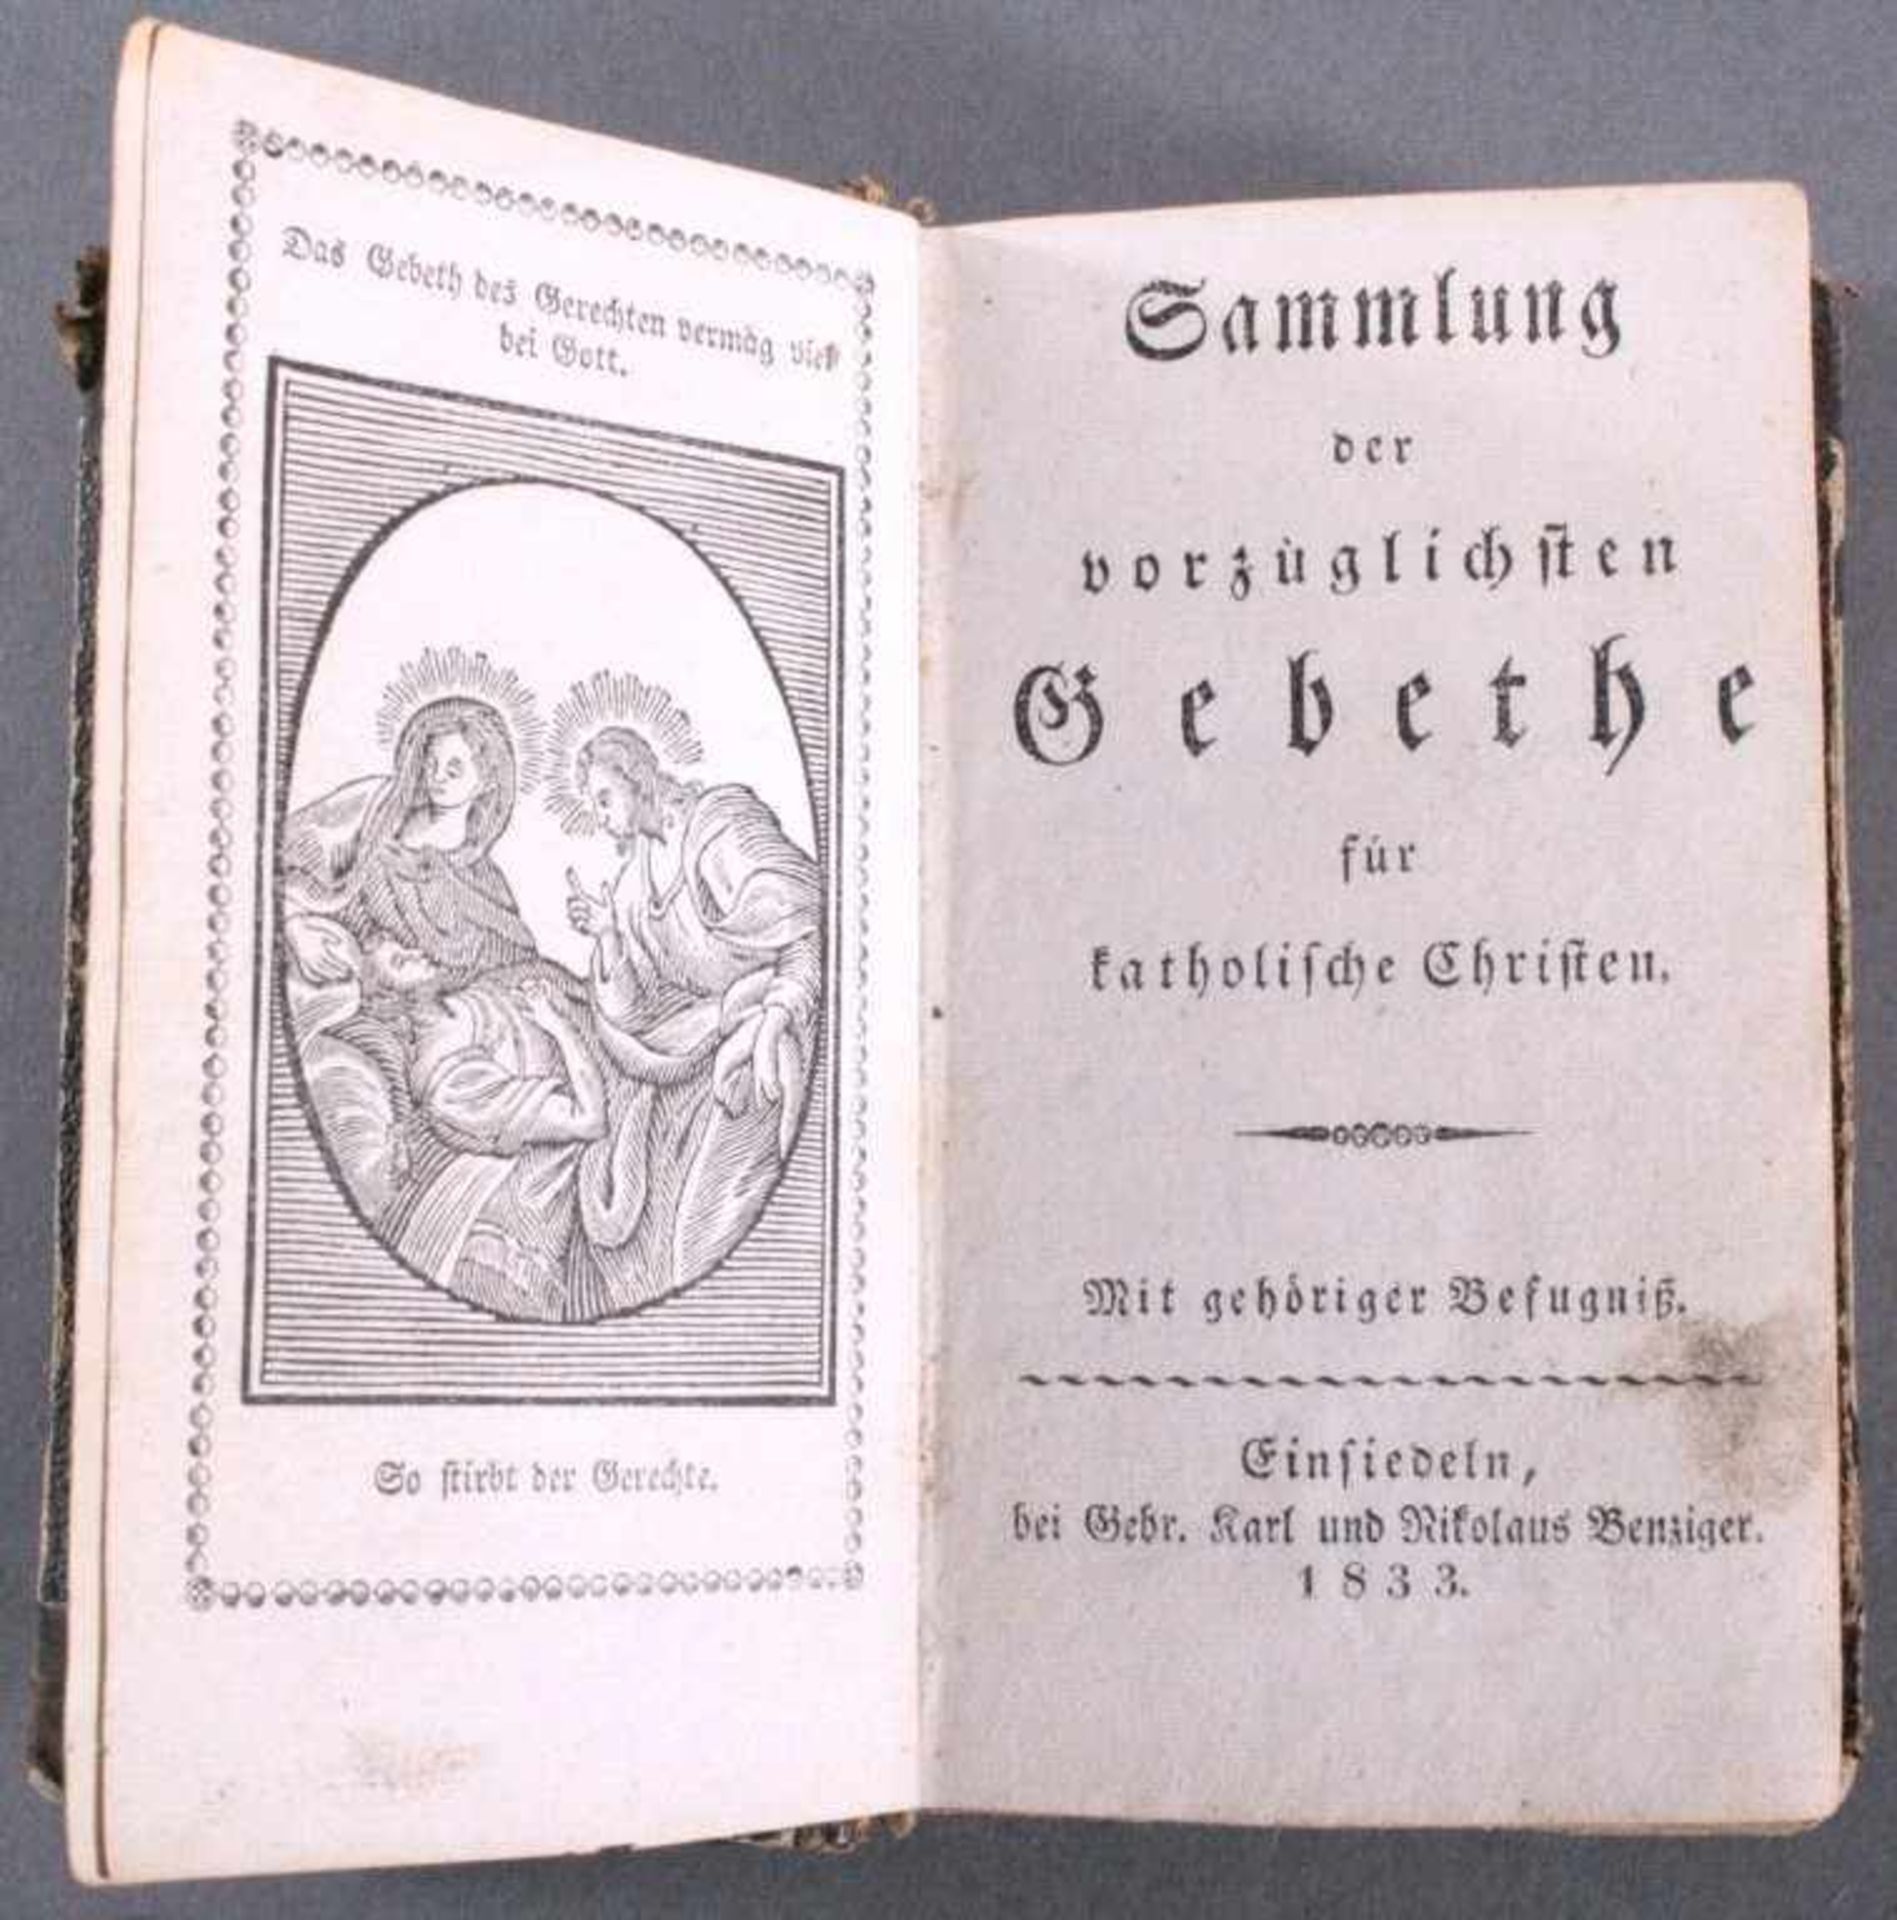 Sammlung der vorzüglichsten Gebete, 1833für katholische Christen, Kupfer-gestochenes Büchlein, - Bild 2 aus 2